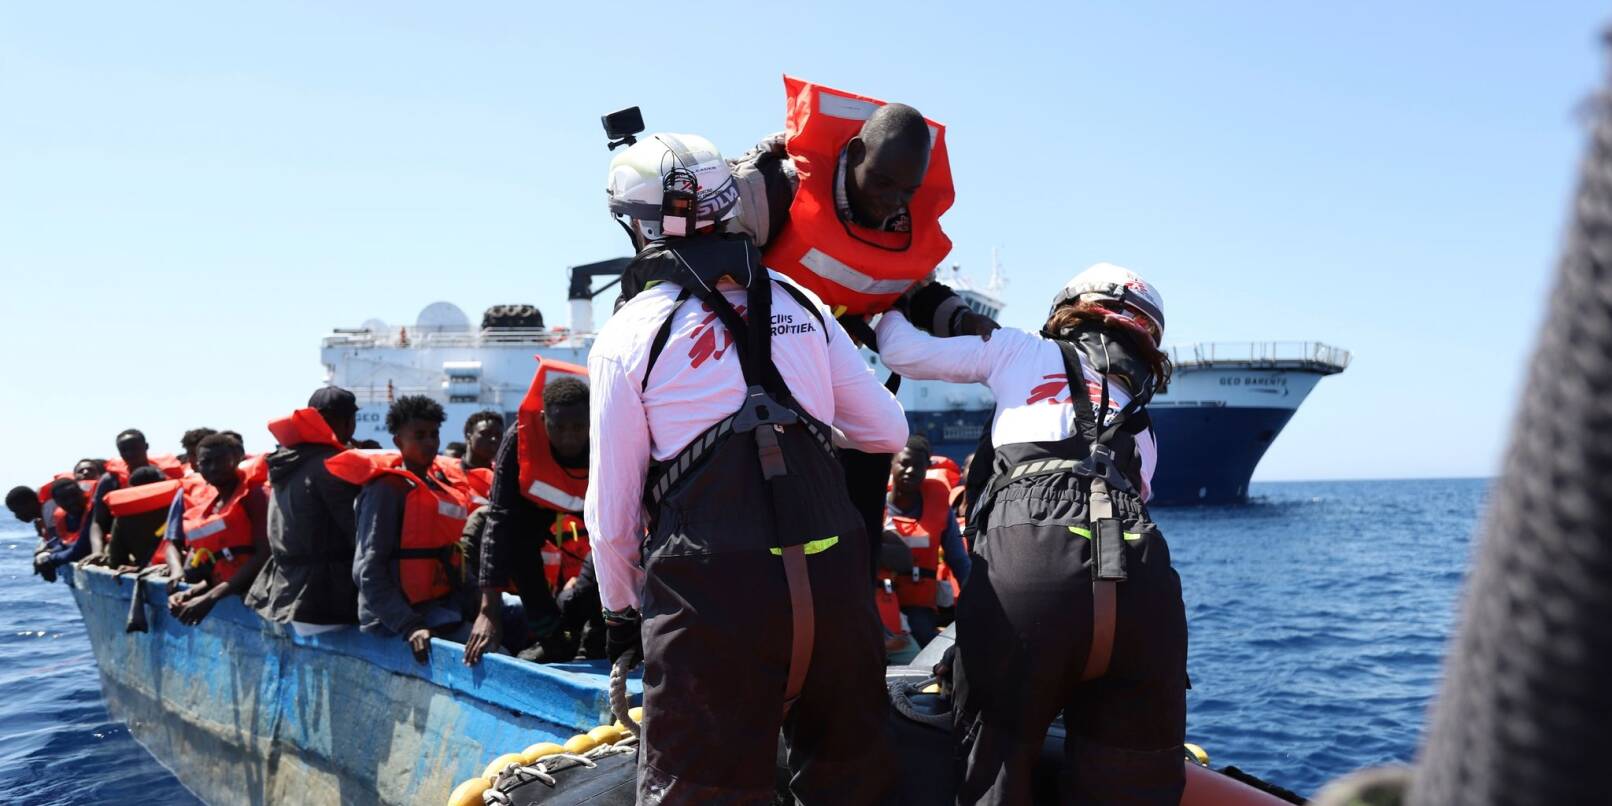 Migranten werden in den internationalen Gewässern vor der libyschen Küste von der Besatzung des Rettungsschiffs Geo Barents gerettet.